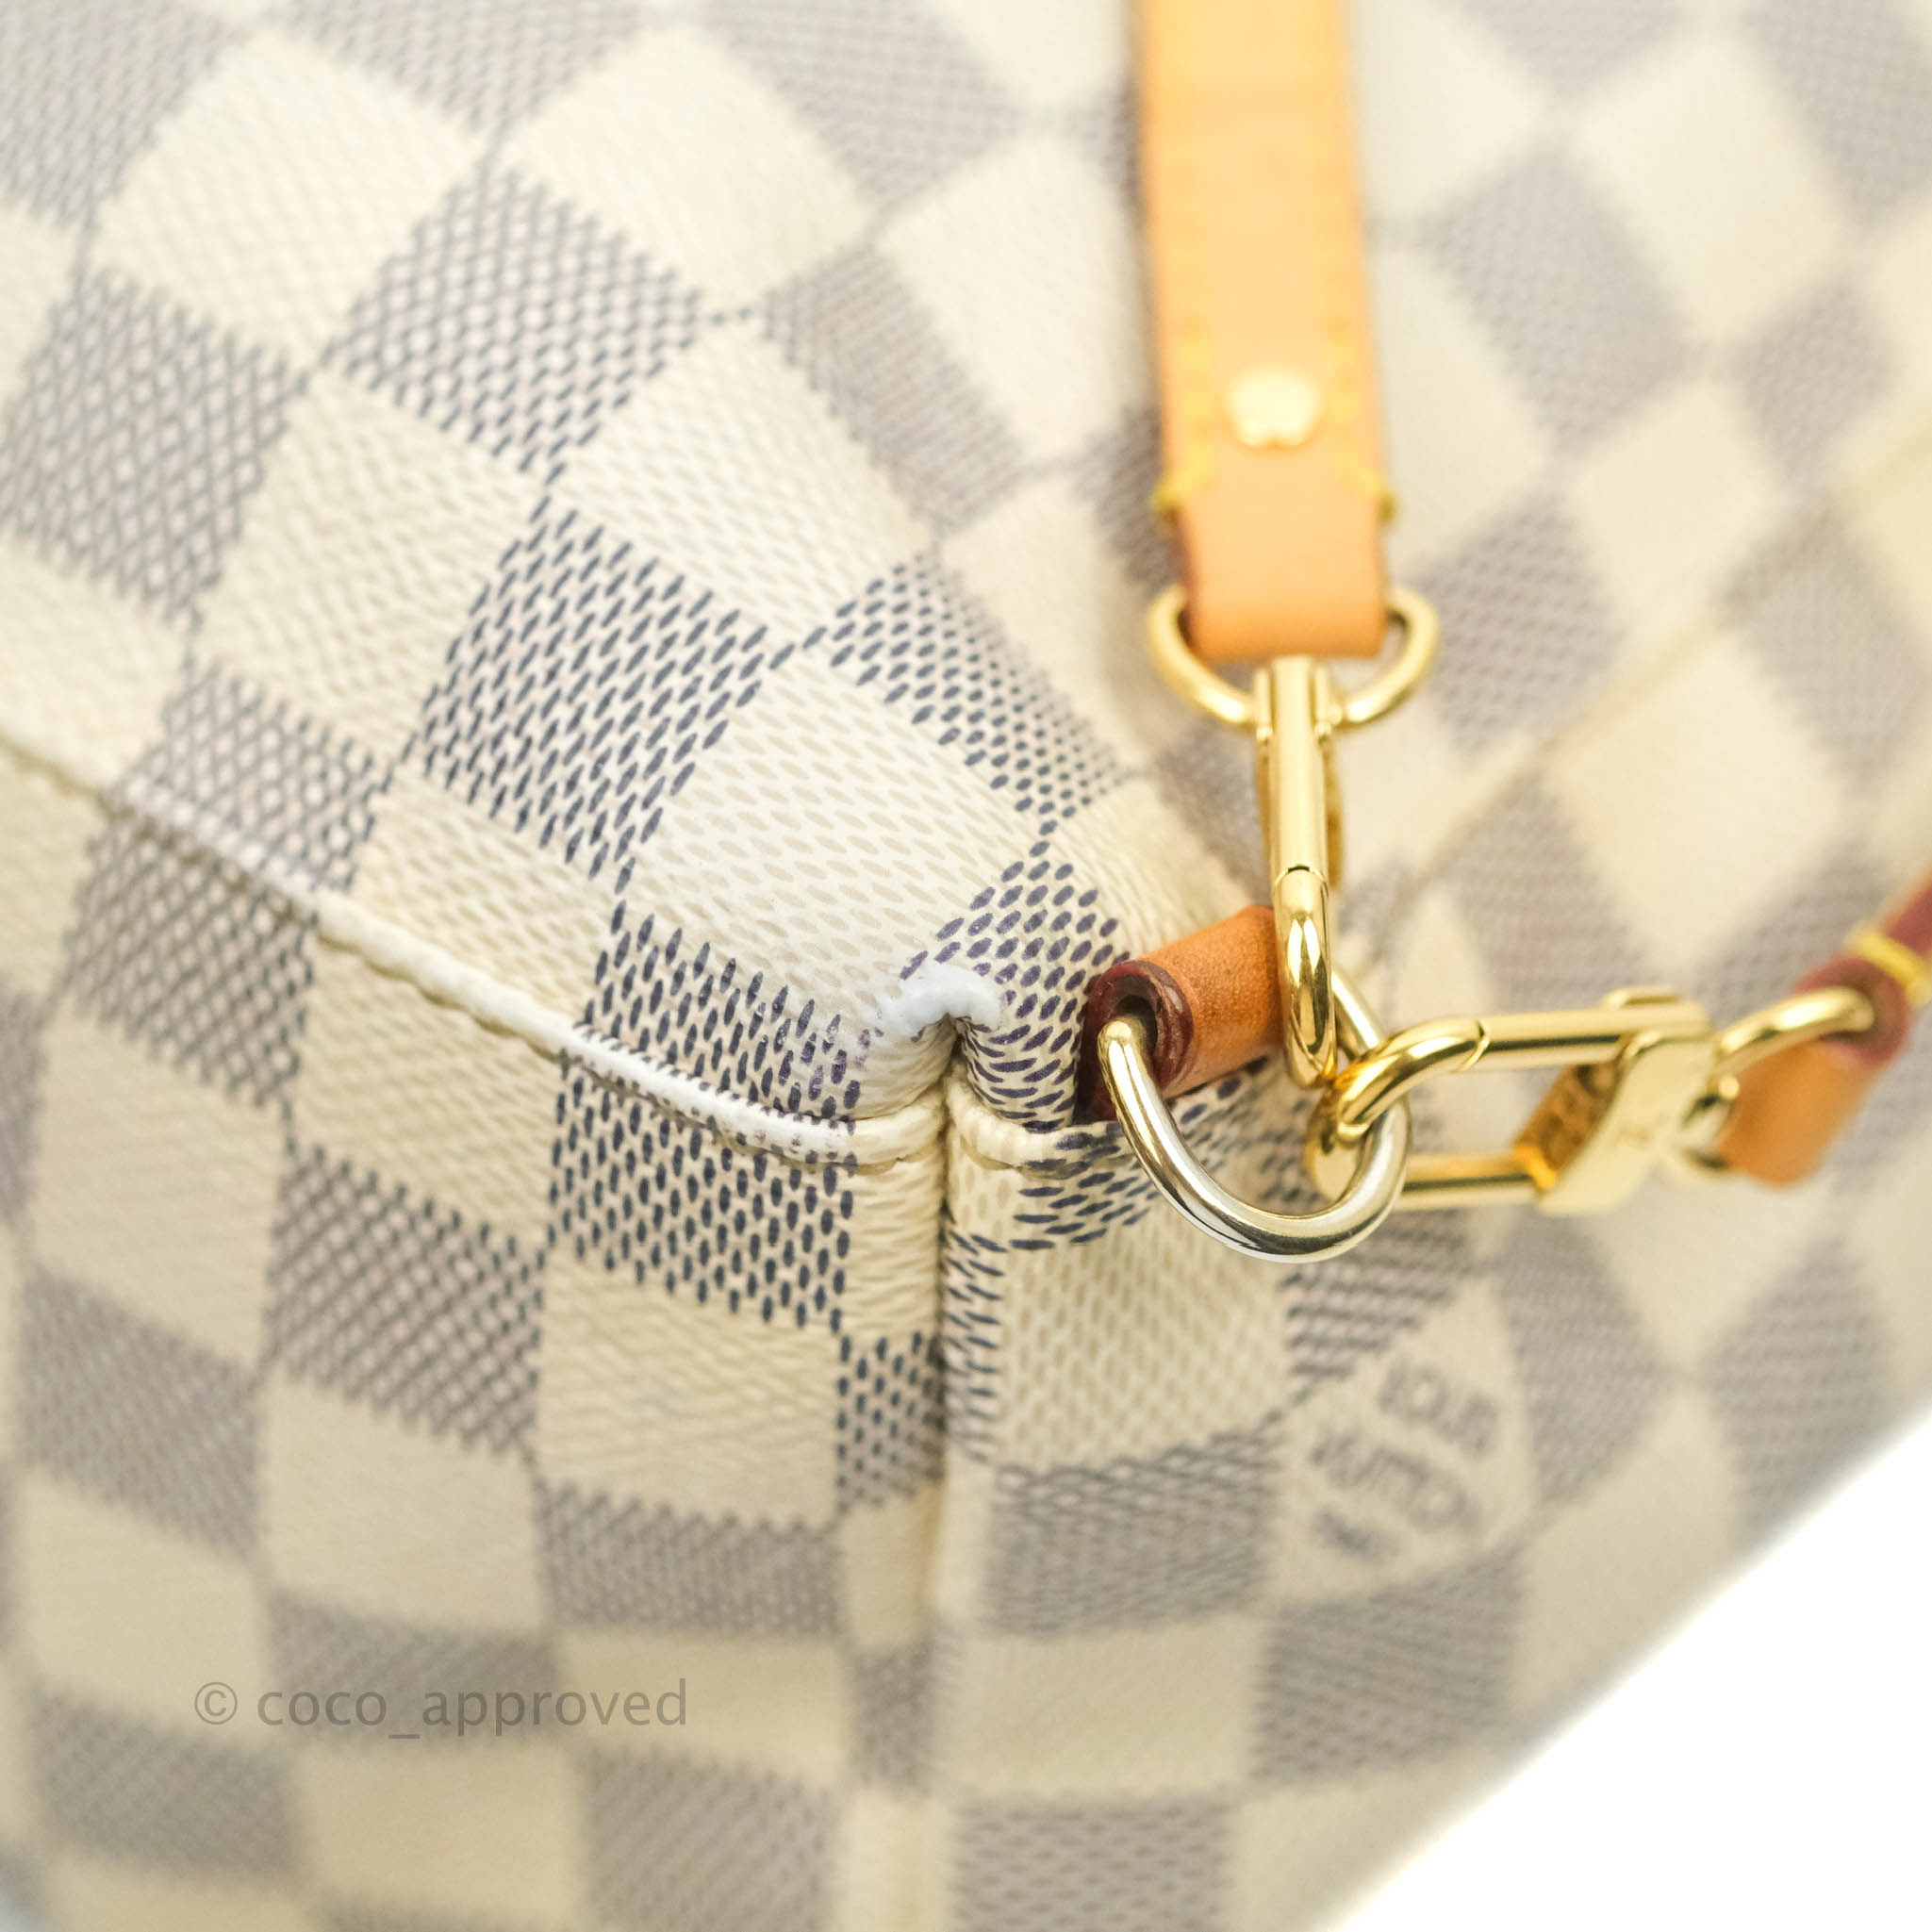 Shop Louis Vuitton Sperone Bb by KICKSSTORE